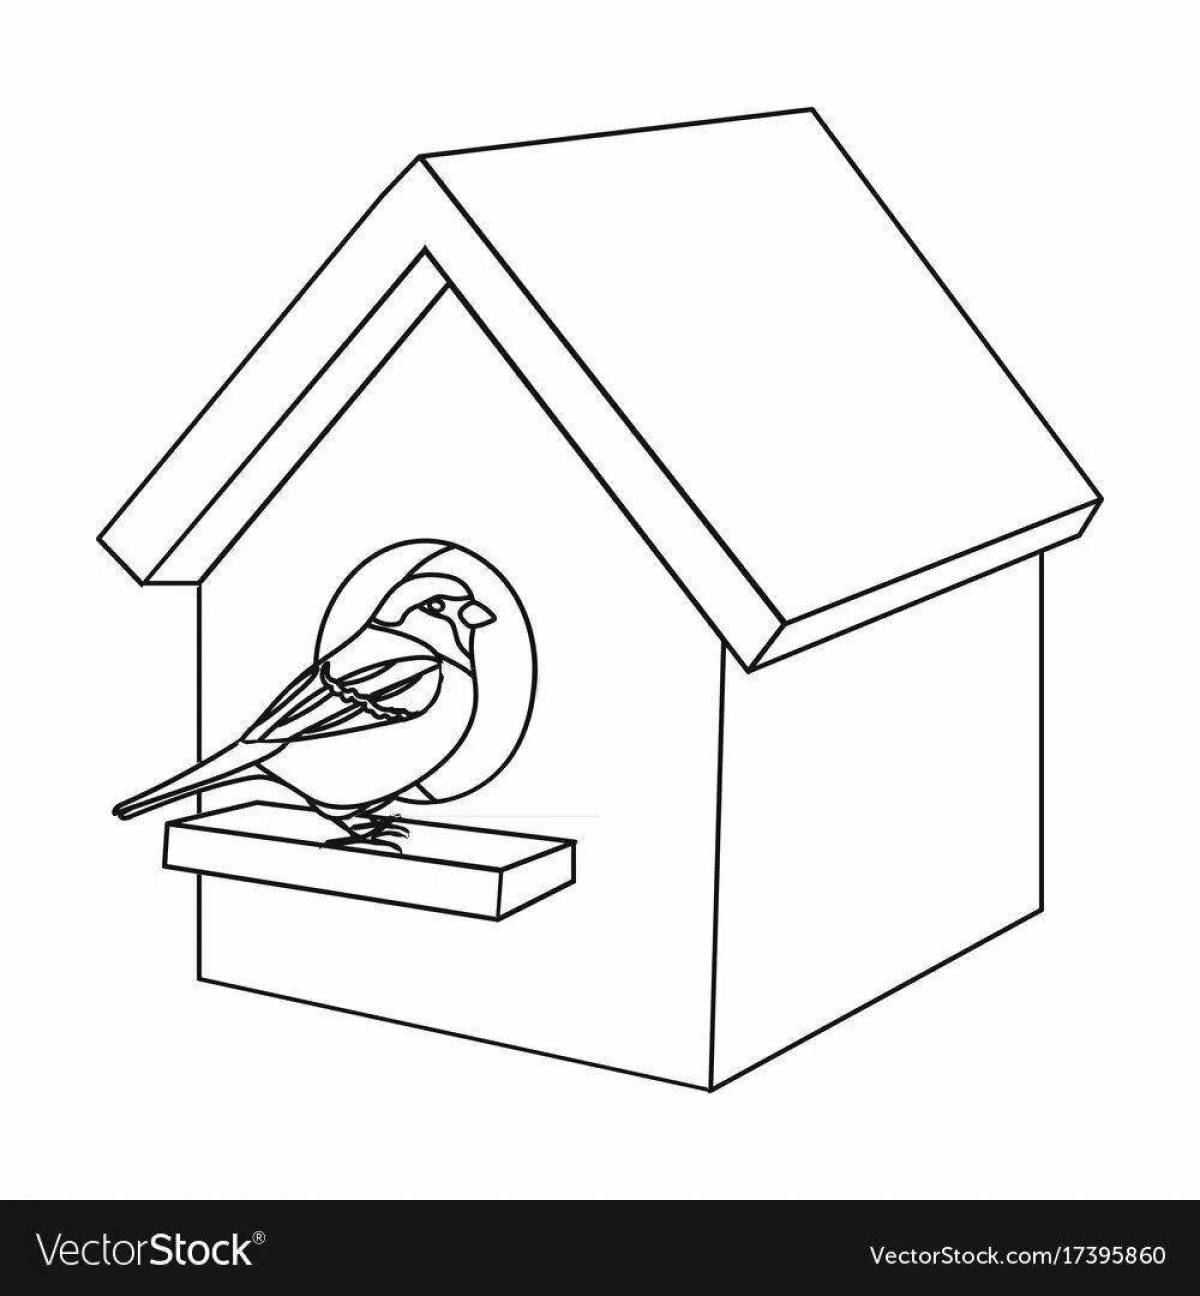 Joyful coloring birdhouse for children